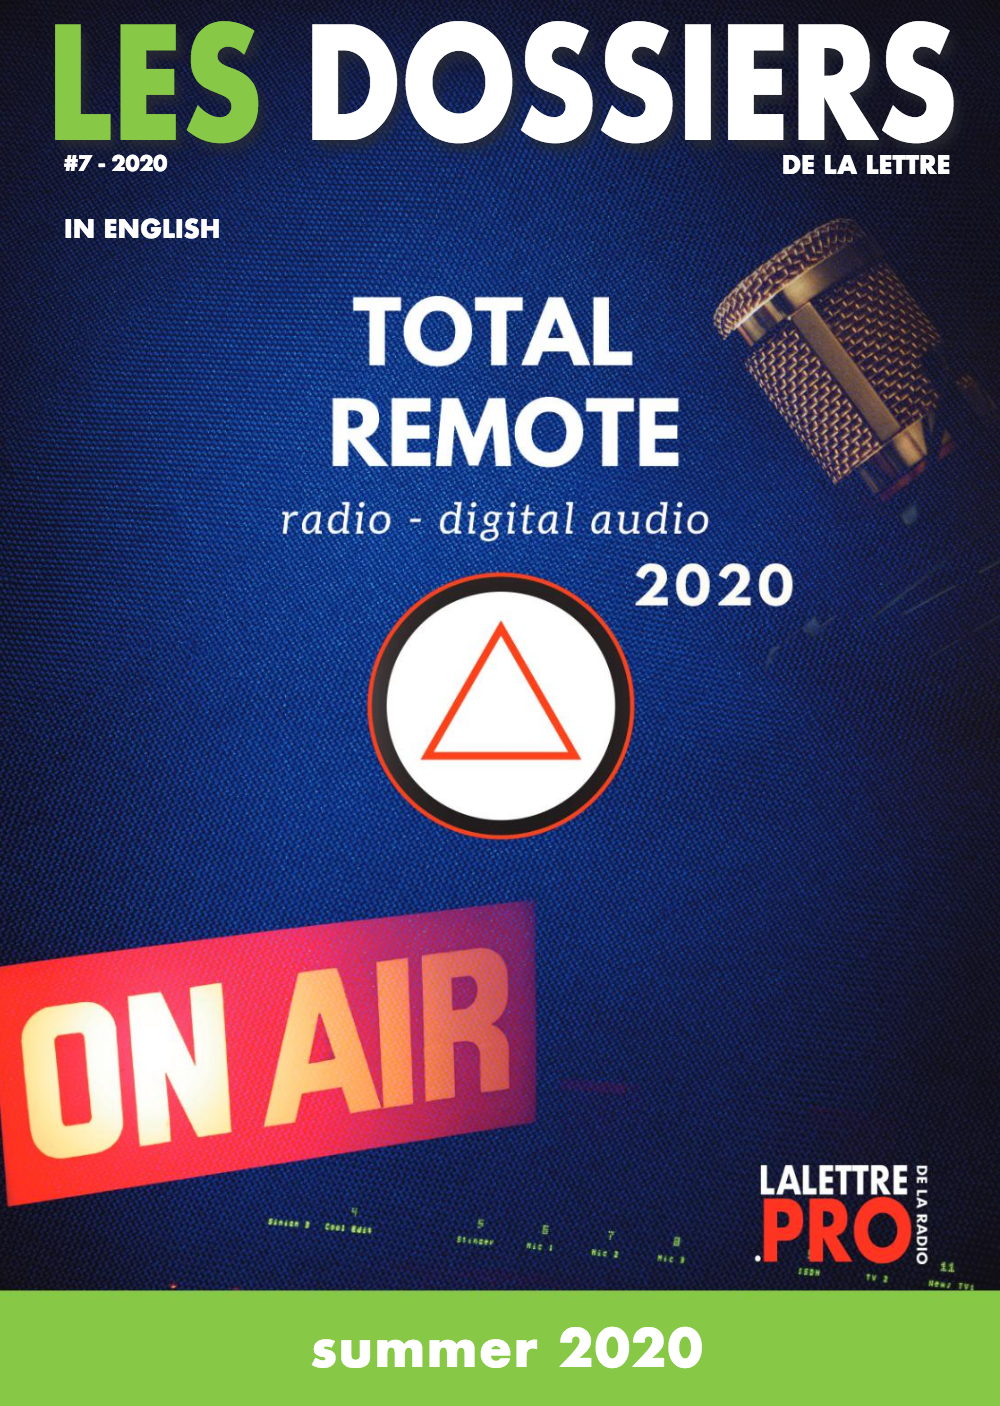 Total Remote : soyez présents dans notre nouvel hors-série